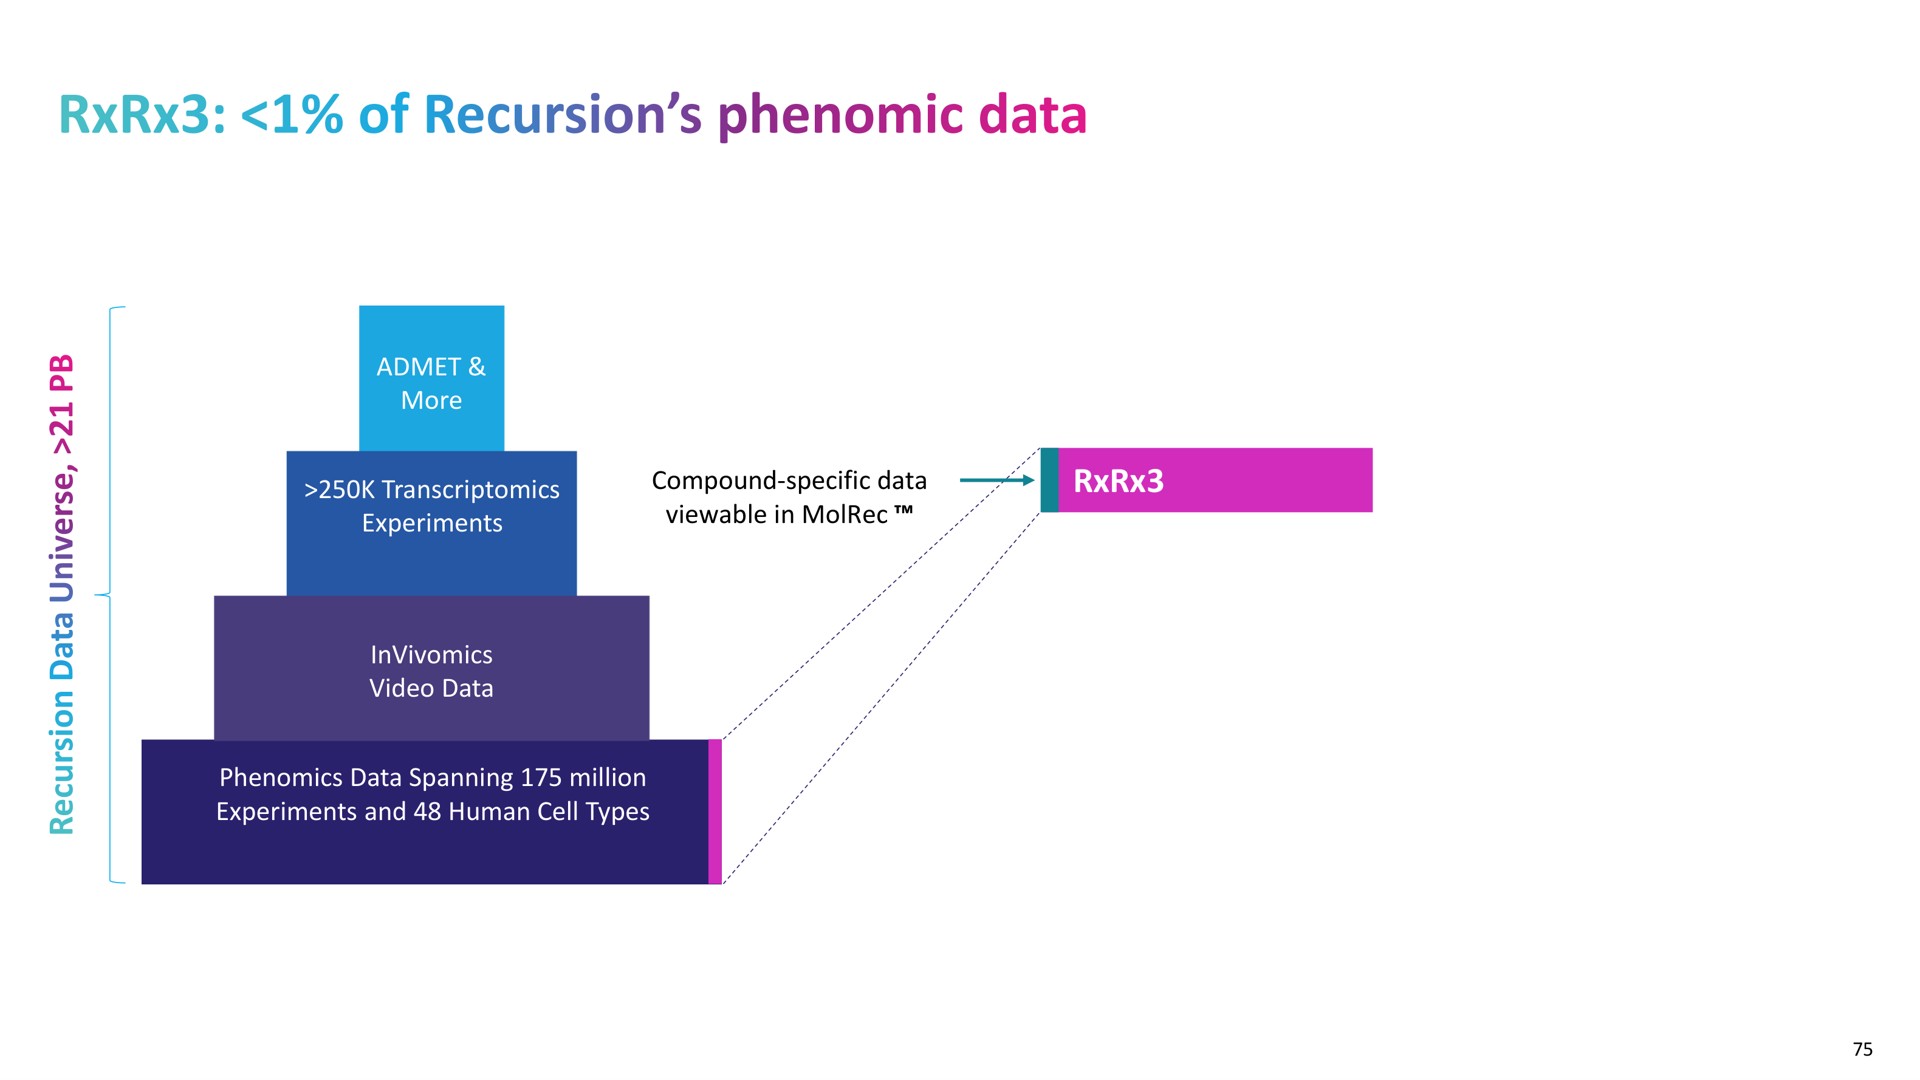 of recursion data | Recursion Pharmaceuticals